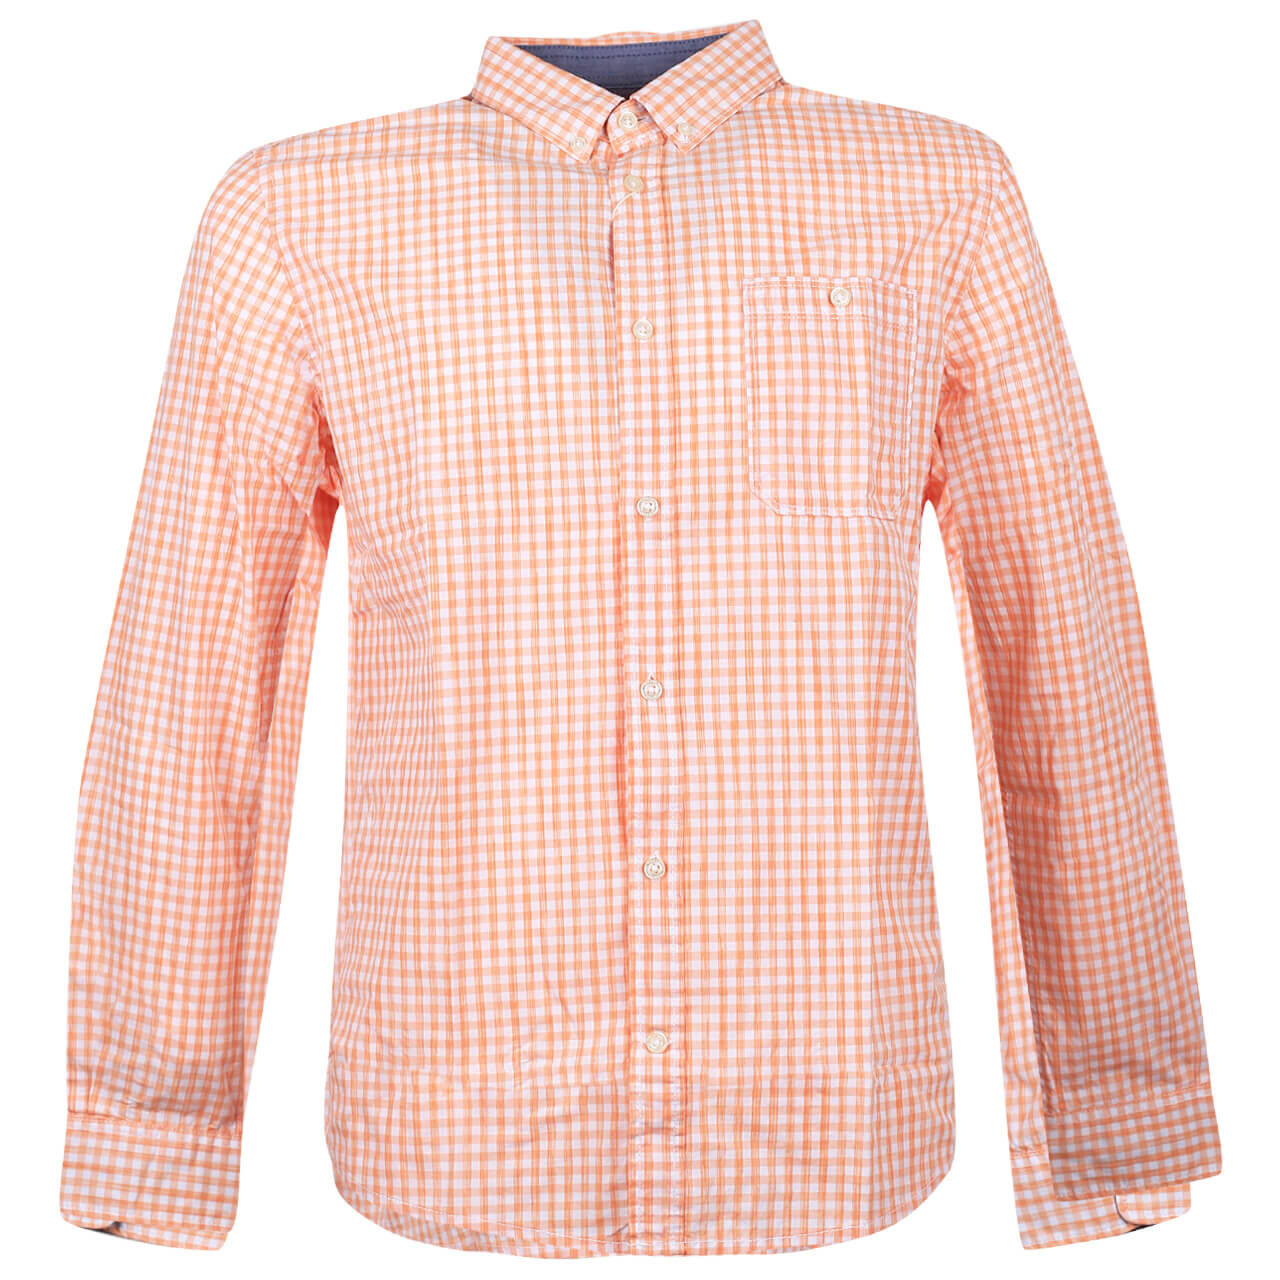 Tom Tailor Hemd für Herren in Orange kariert, FarbNr.: 28584